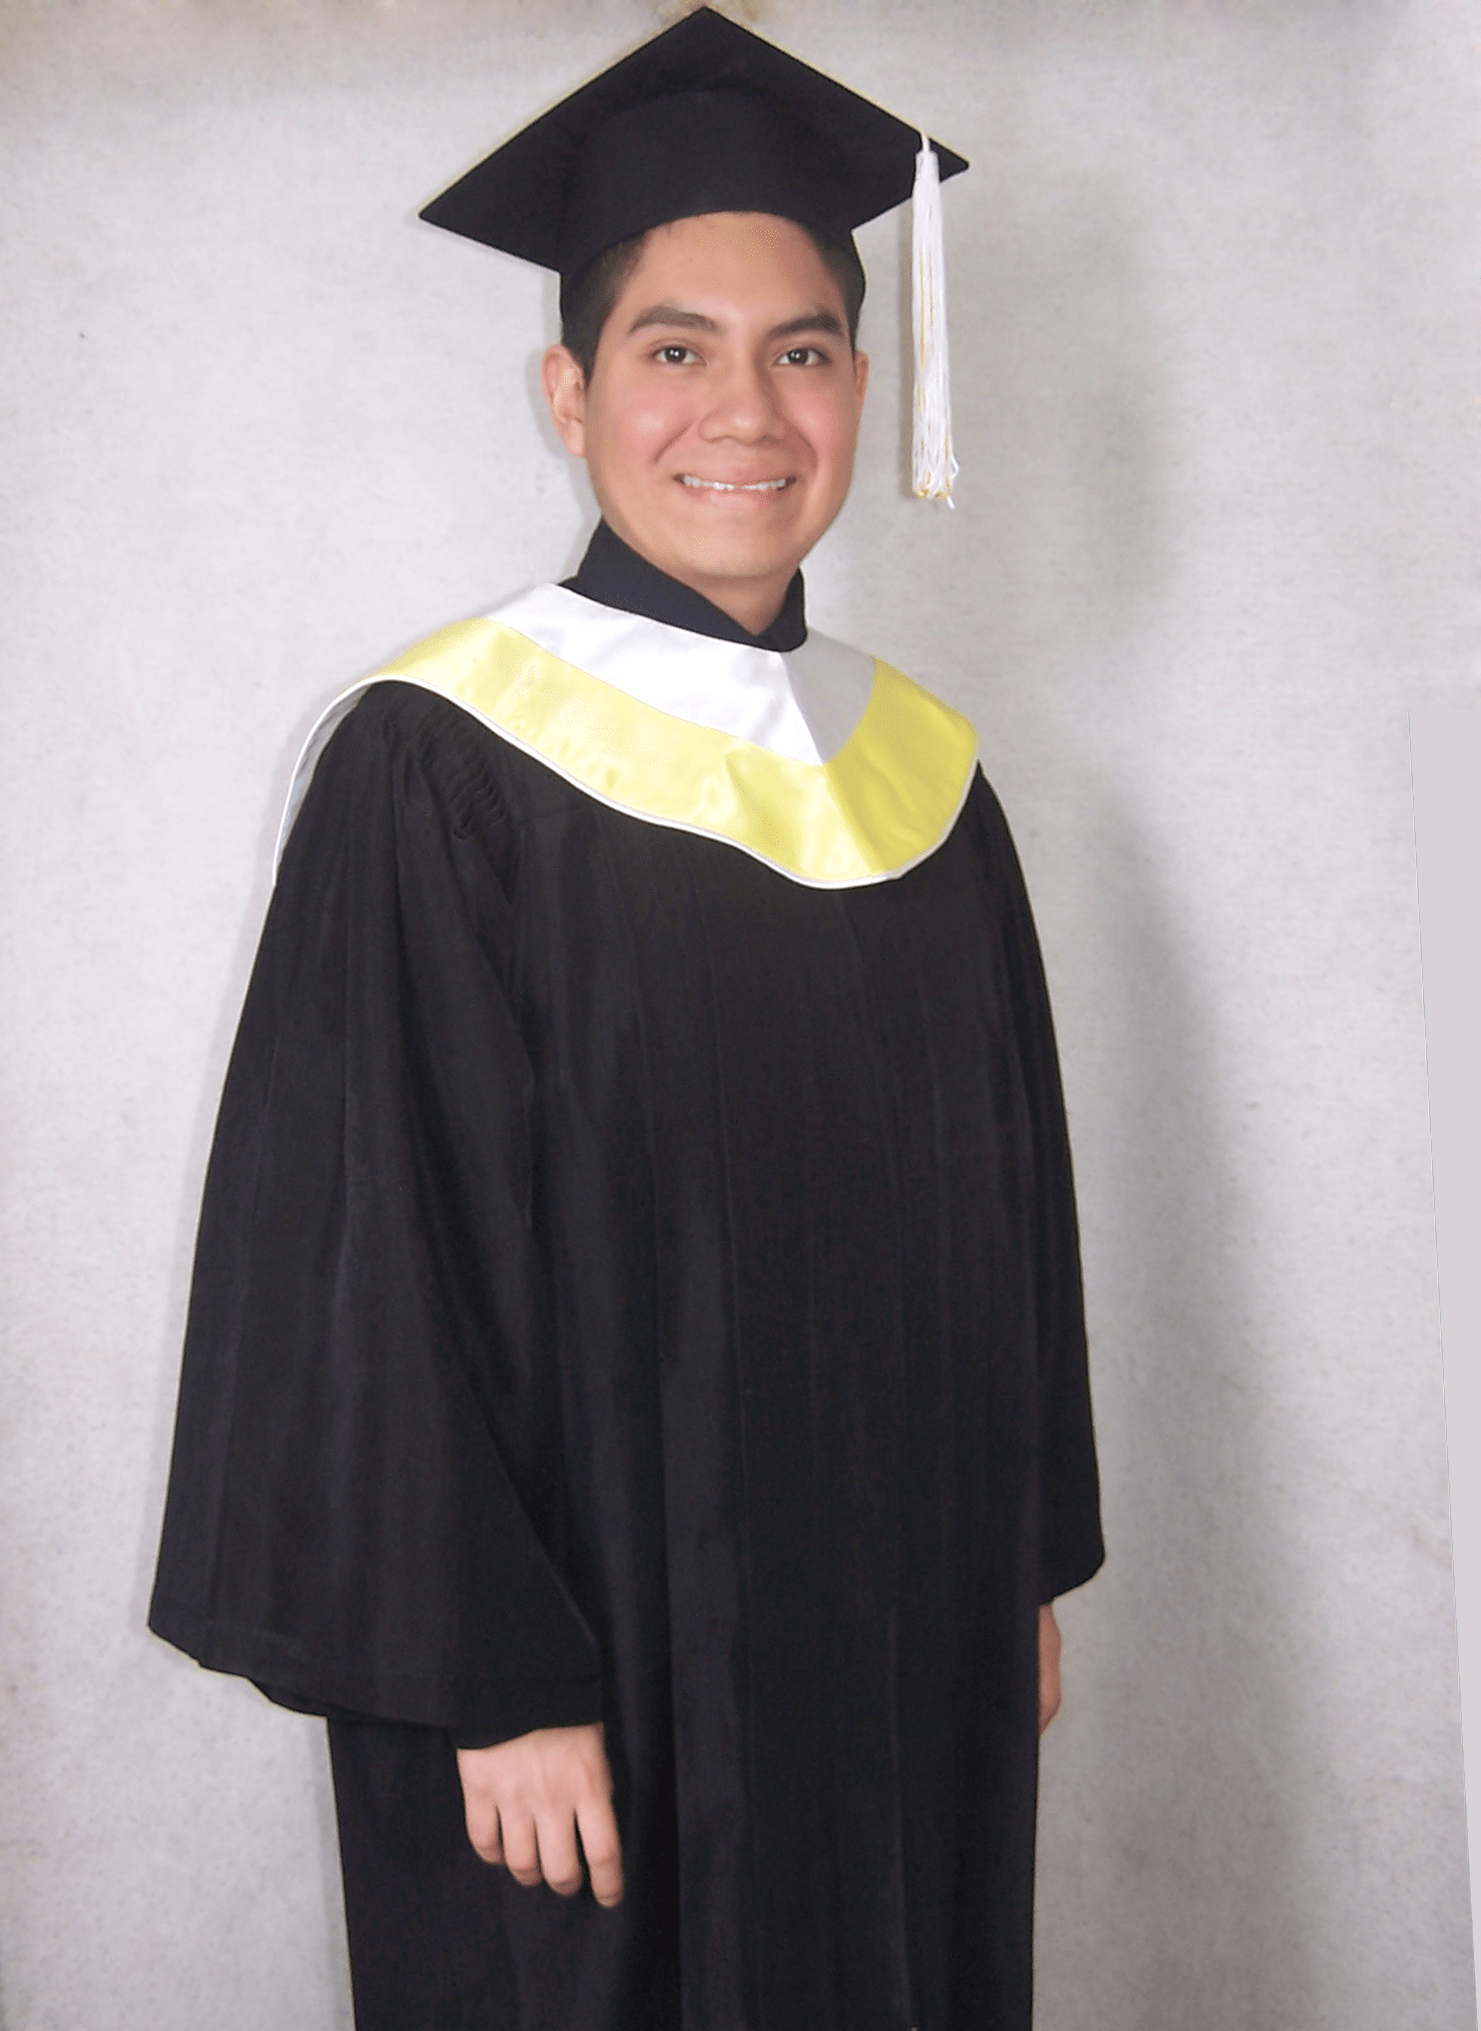 Bruce Rommel Villegas Alva Pontificia Universidad Católica del Perú Toga